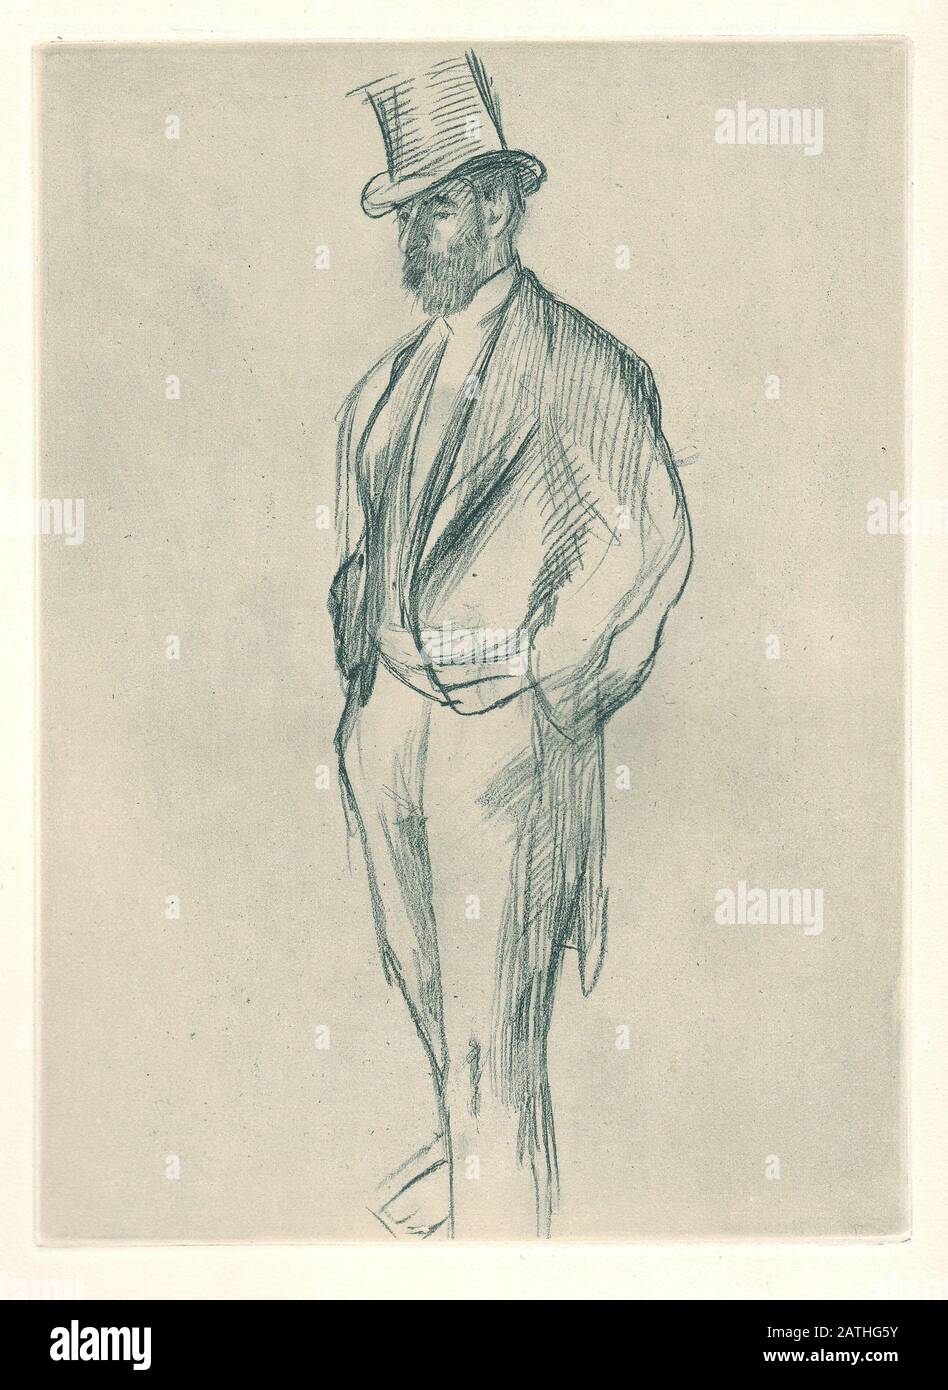 Portrait de Ludovic Halevy Illustration d'une série de 32 gravures d'Edgar Degas qui illustrent une courte histoire écrite par Ludovic Halevy 'la famille Cardinal'. Paris, 1939 Banque D'Images